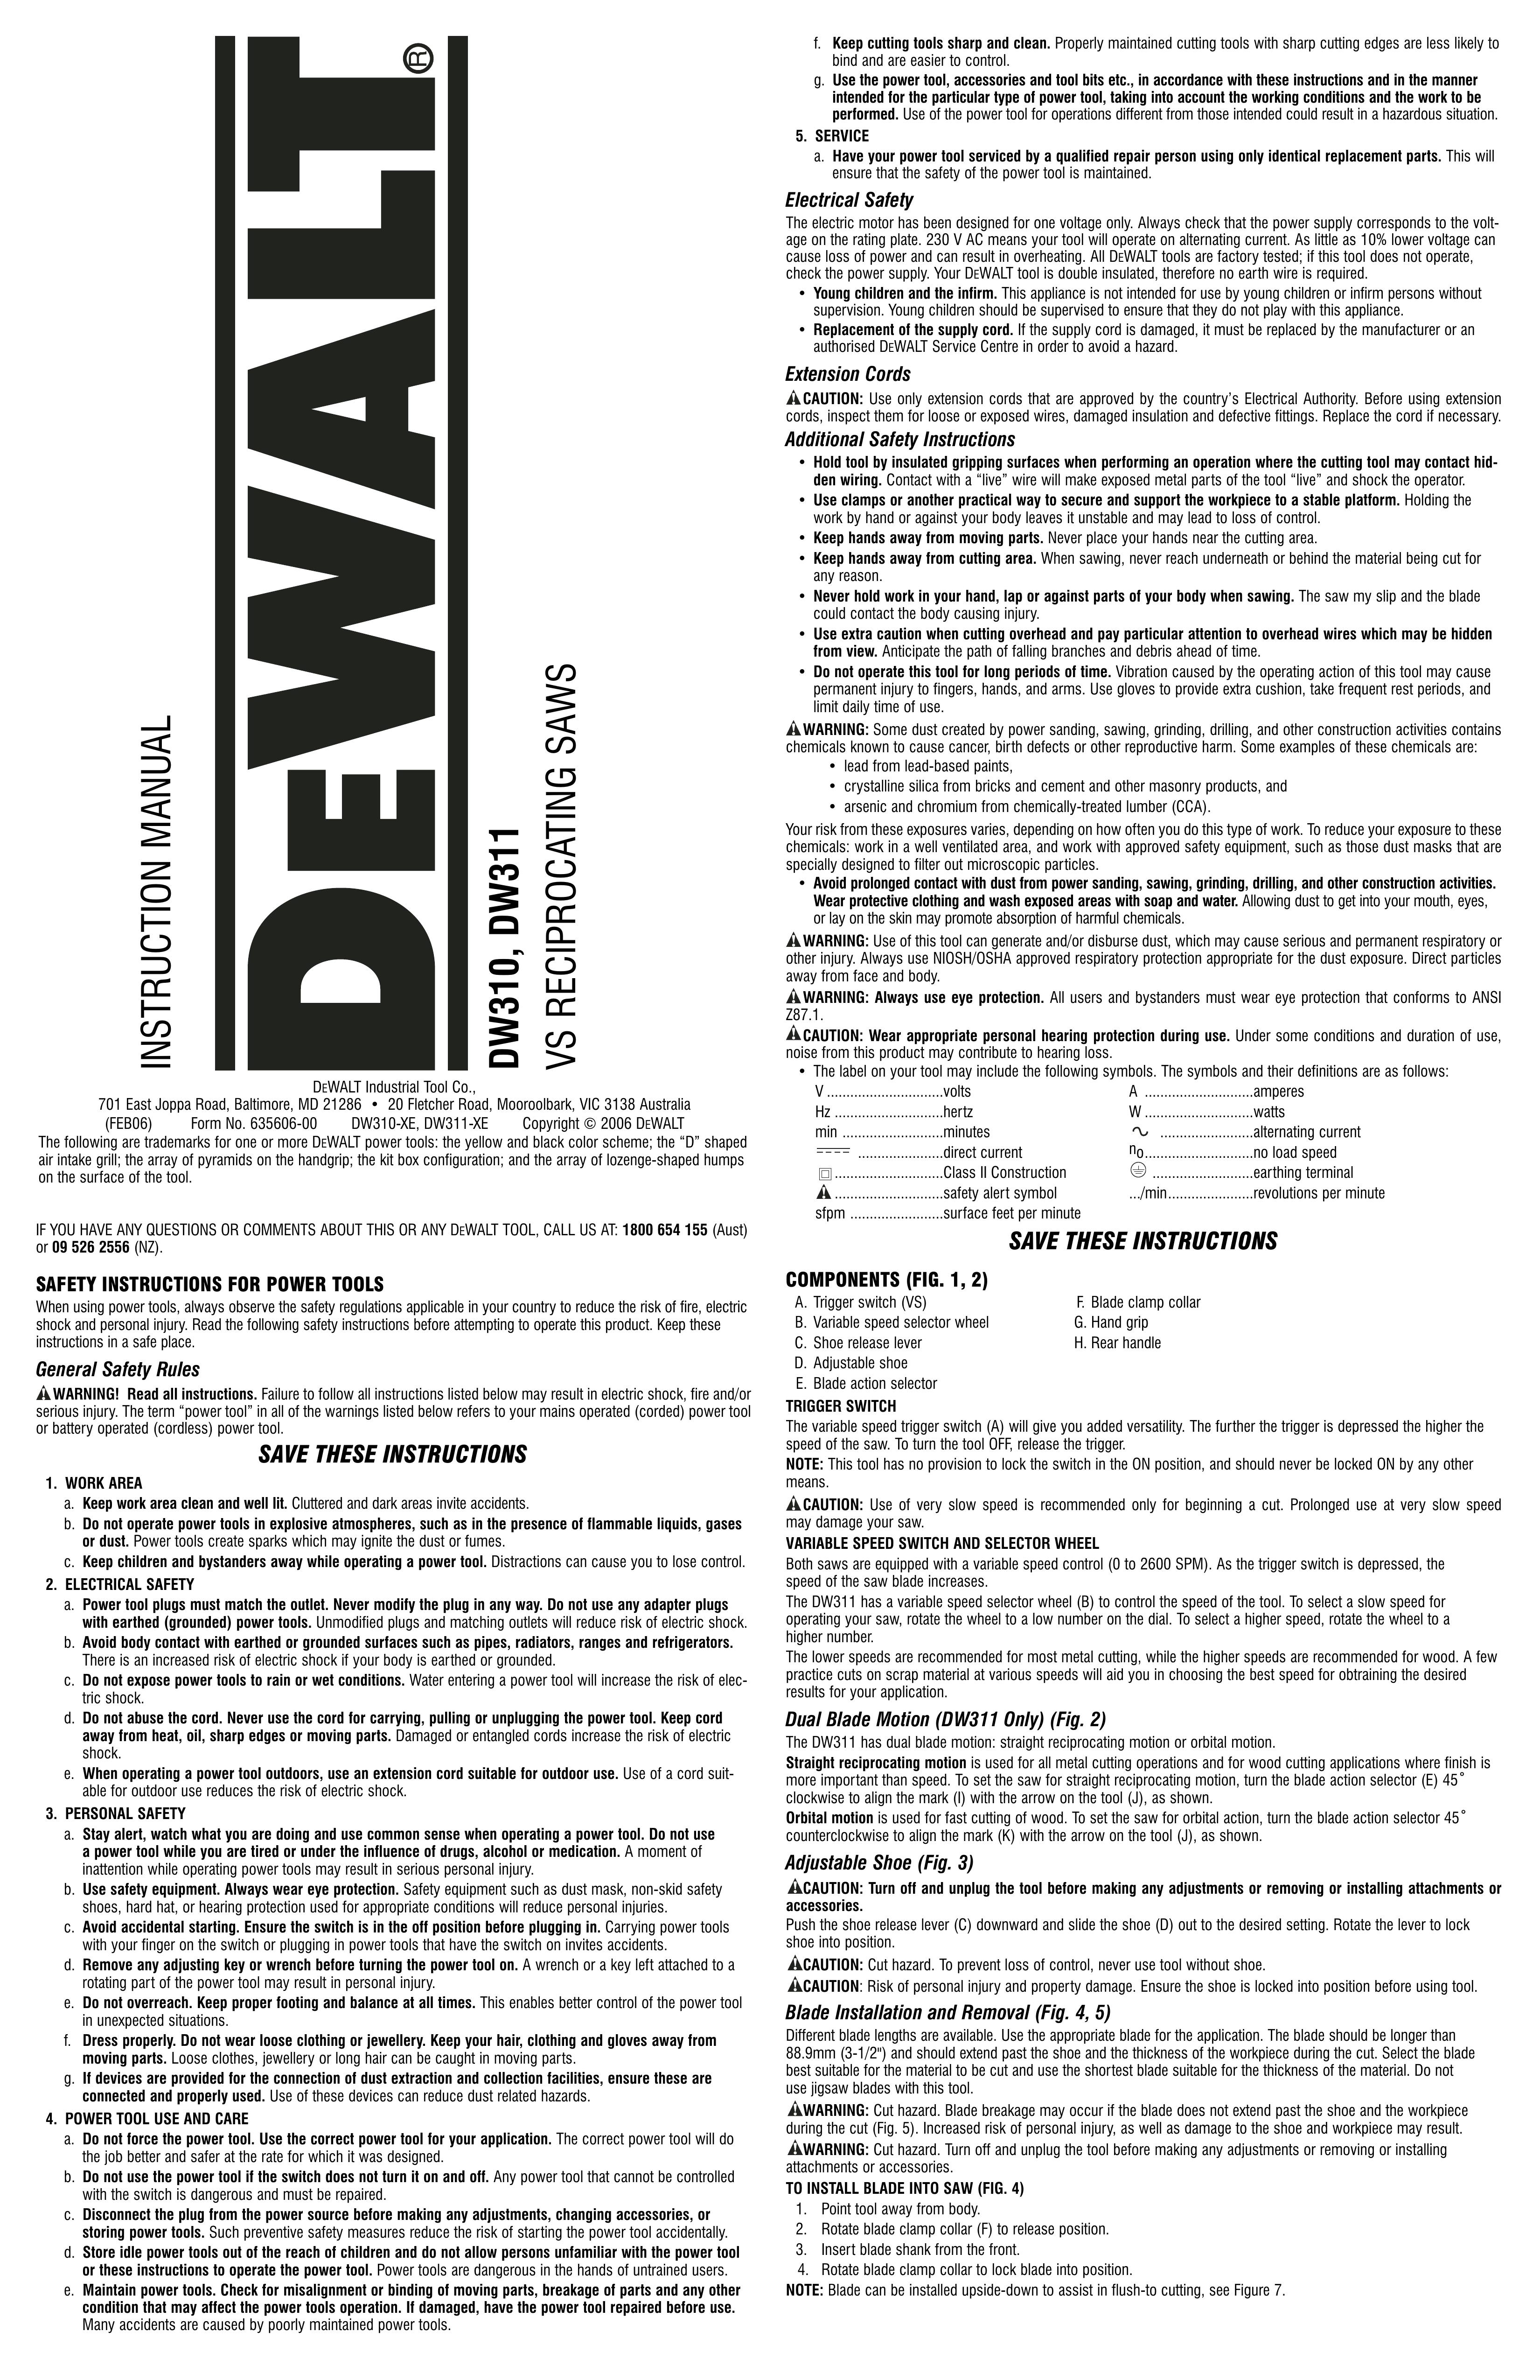 DeWalt DW311K Chainsaw User Manual